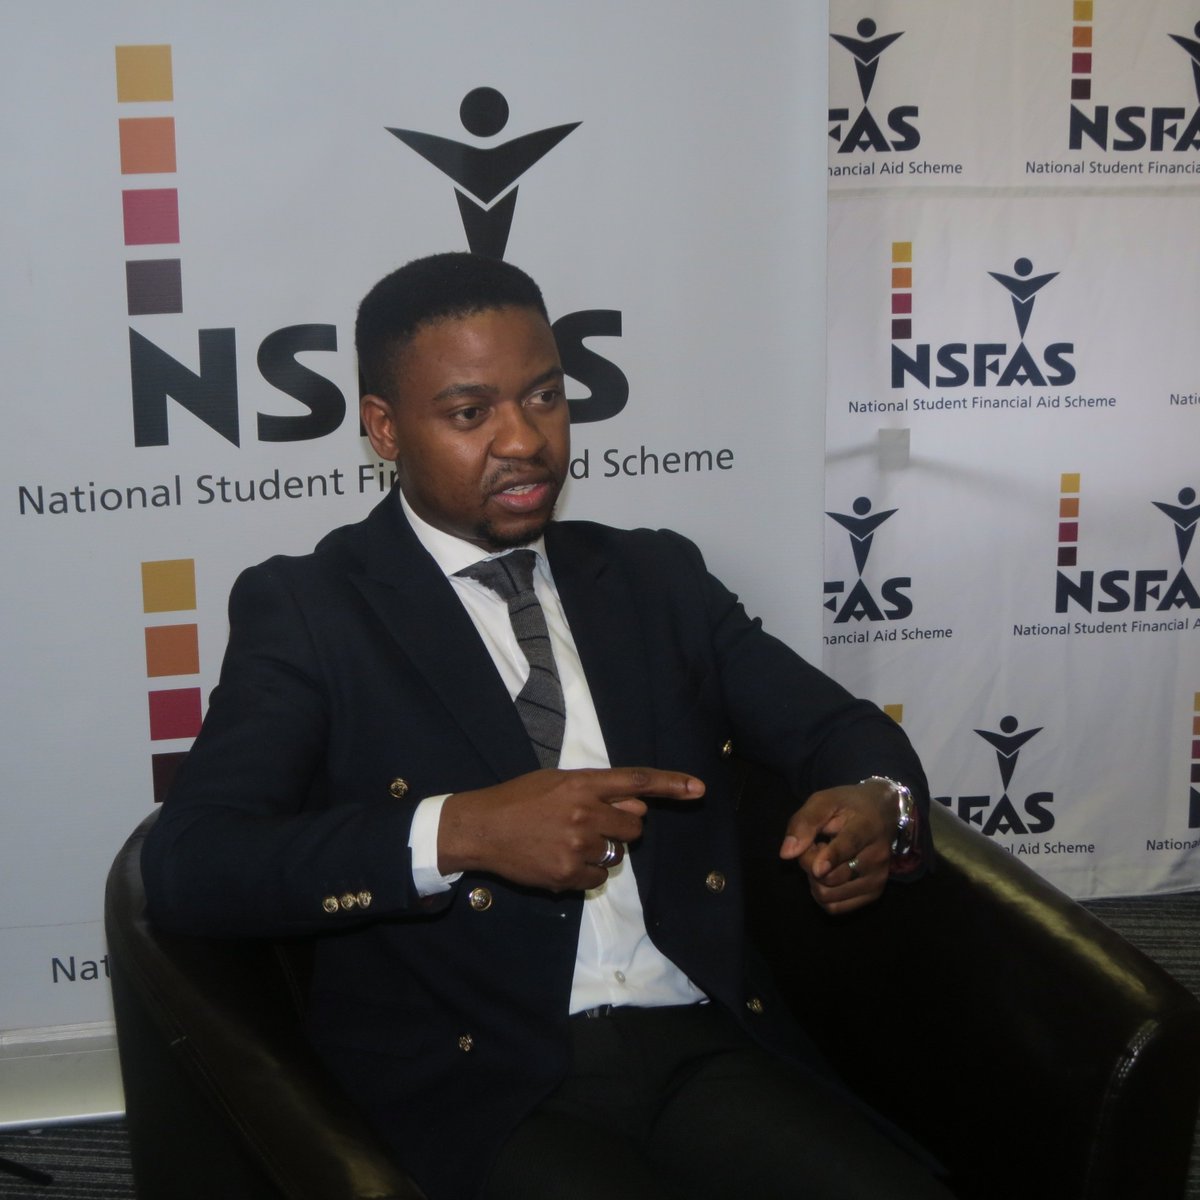 NSFAS spokesperson Kagisho Mamabolo